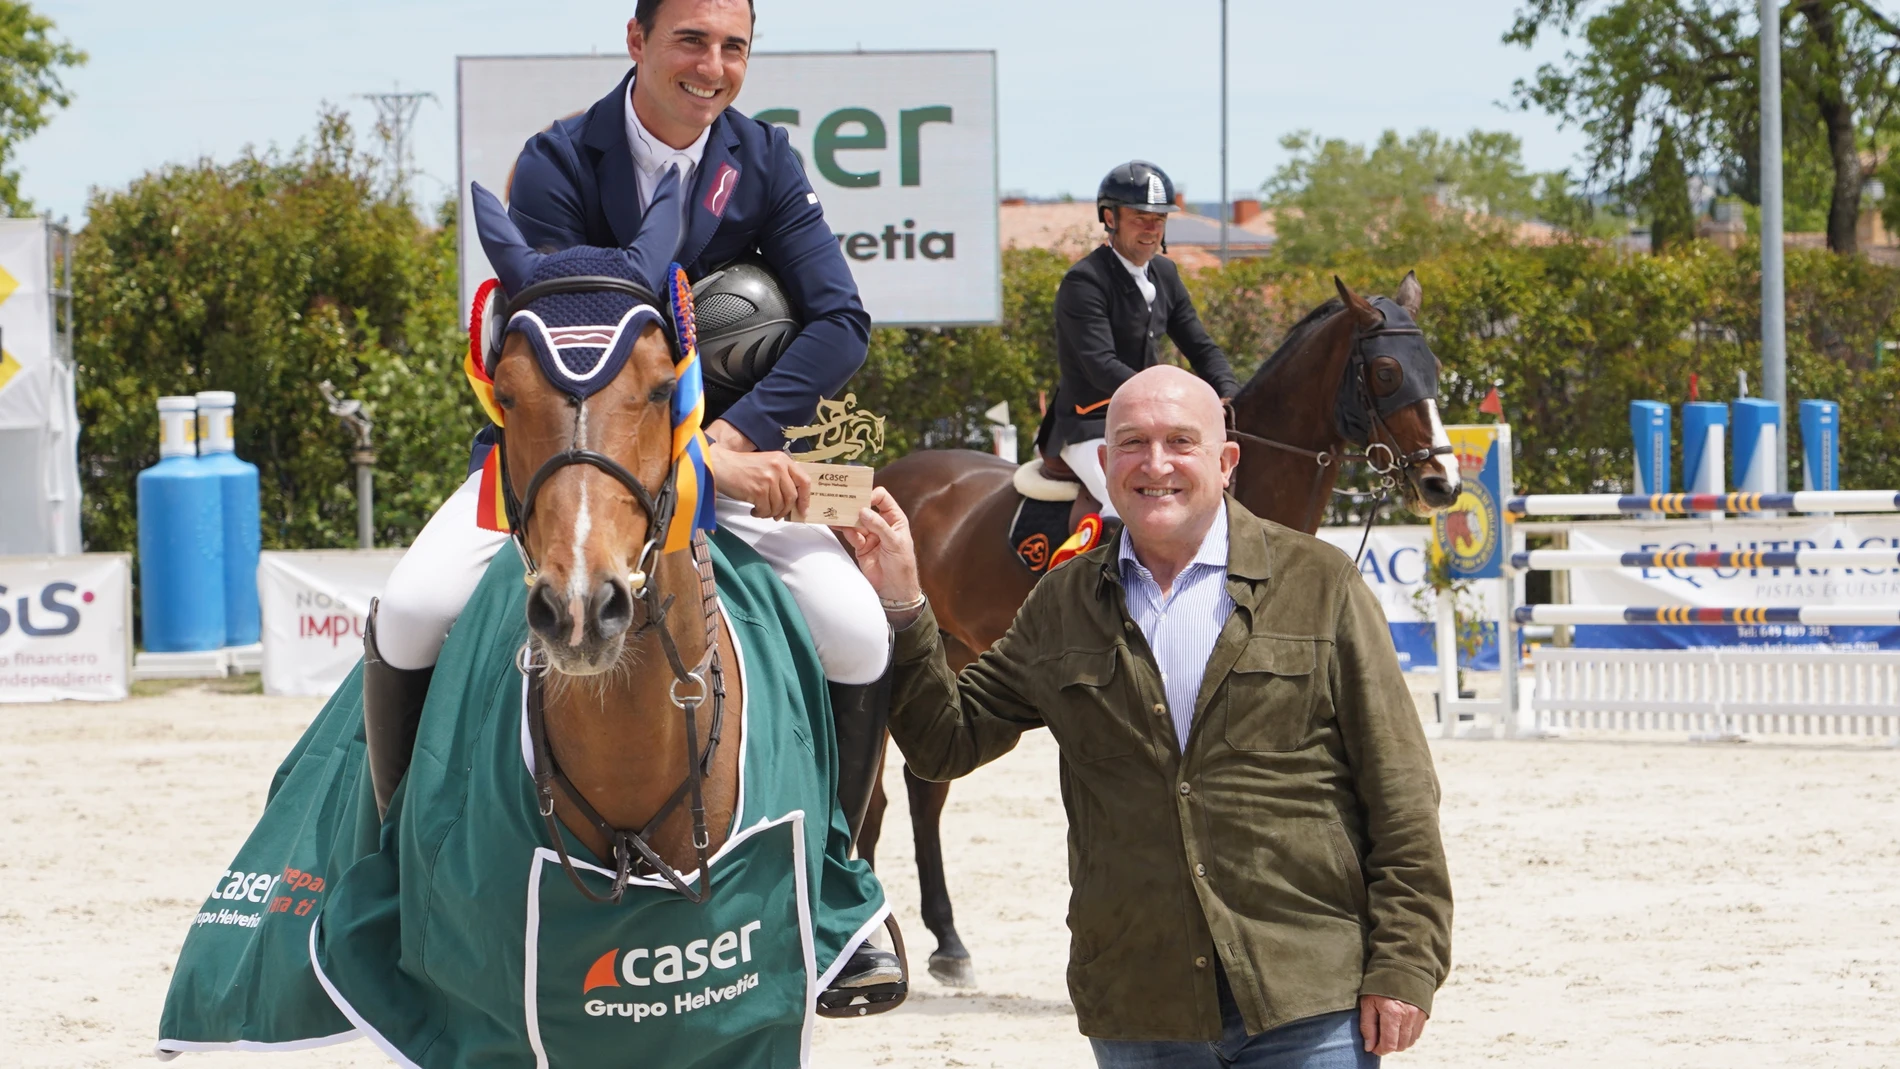 El alcalde de Valladolid, Jesús Julio Carnero con Álvaro González, ganador del Trofeo Caser Grupo Helvetia